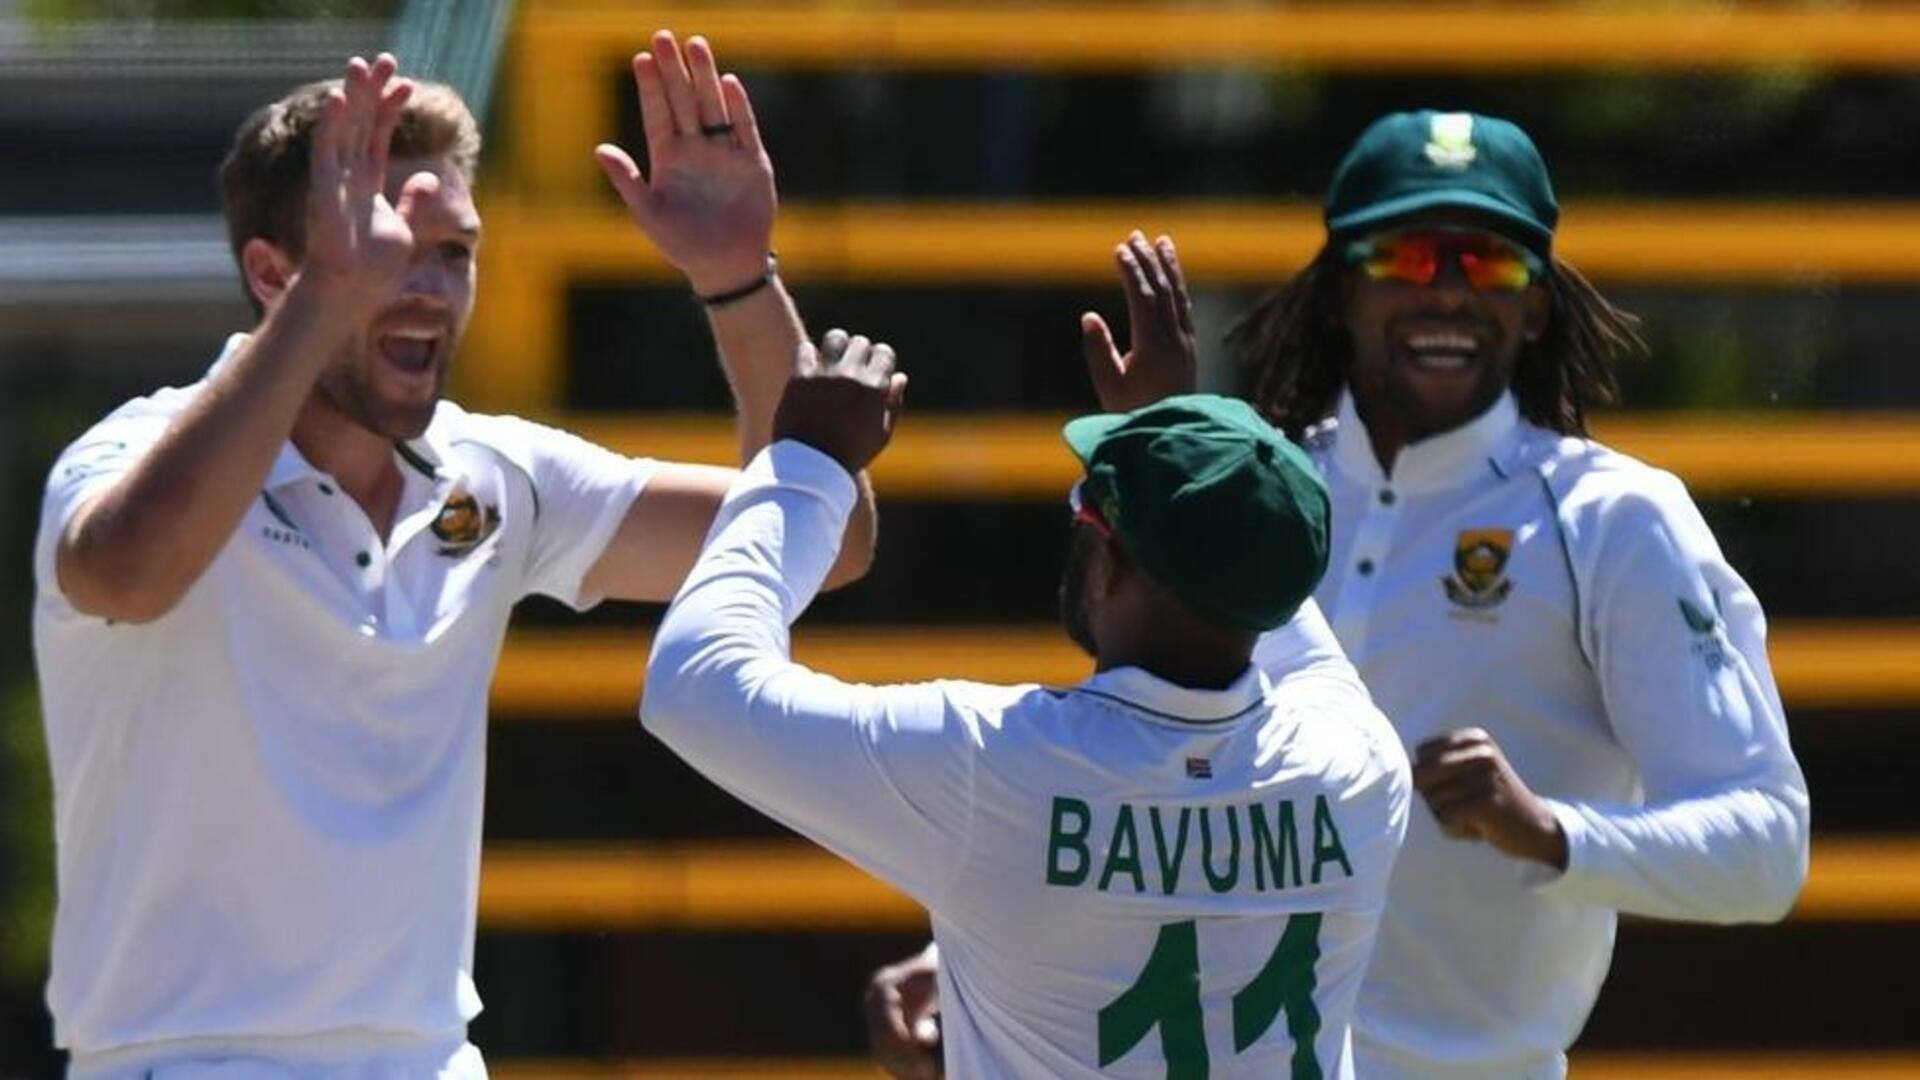 दूसरा टेस्ट: दक्षिण अफ्रीका ने मजबूत की स्थिति, वेस्टइंडीज पहली पारी में 73 रन से पिछड़ा 